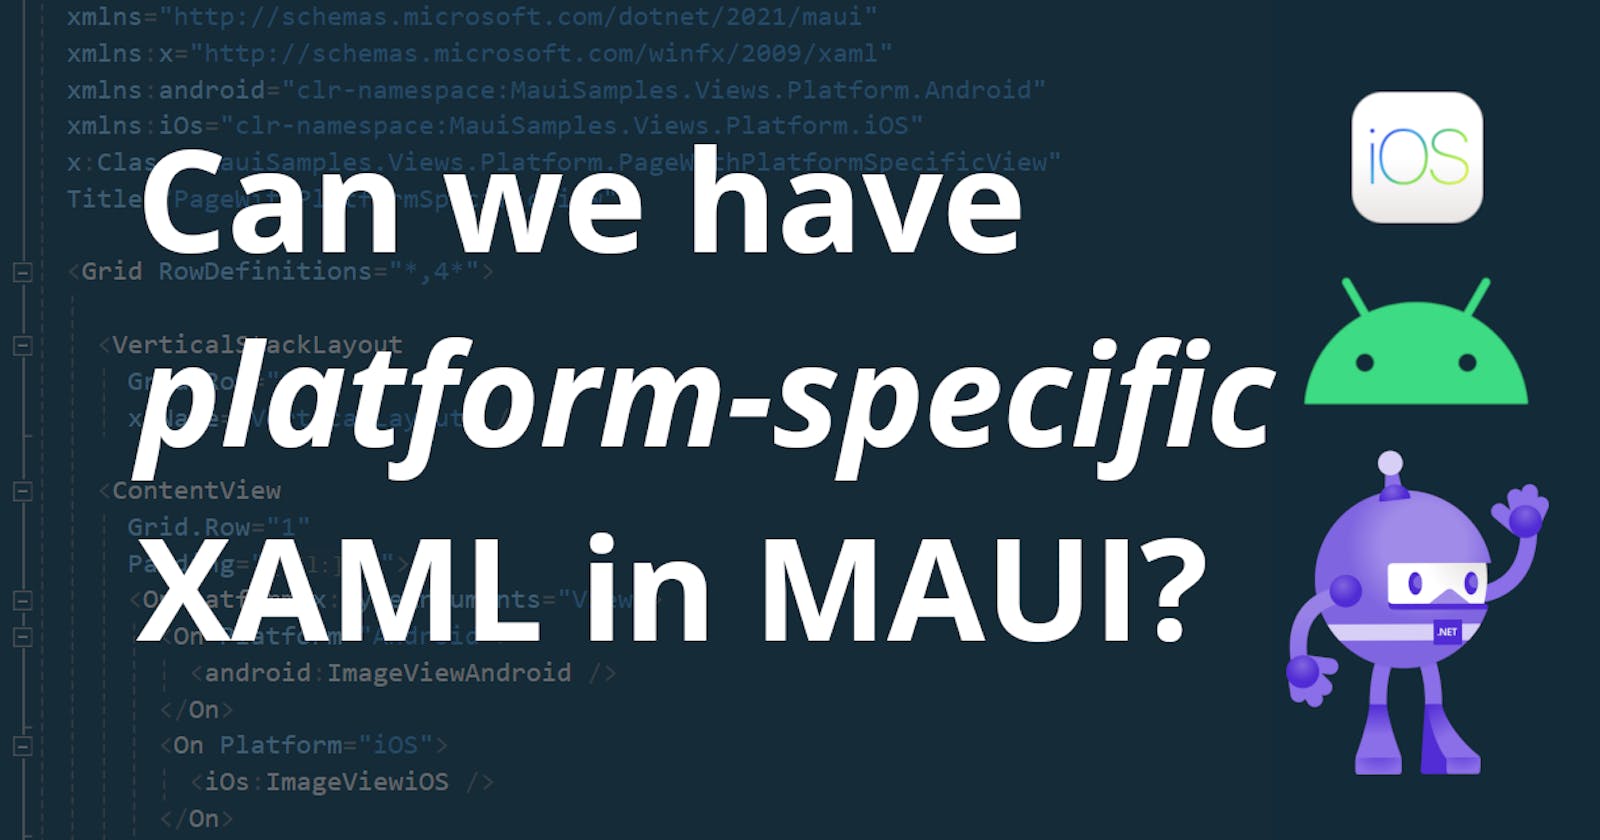 Platform-specific XAML in .NET MAUI